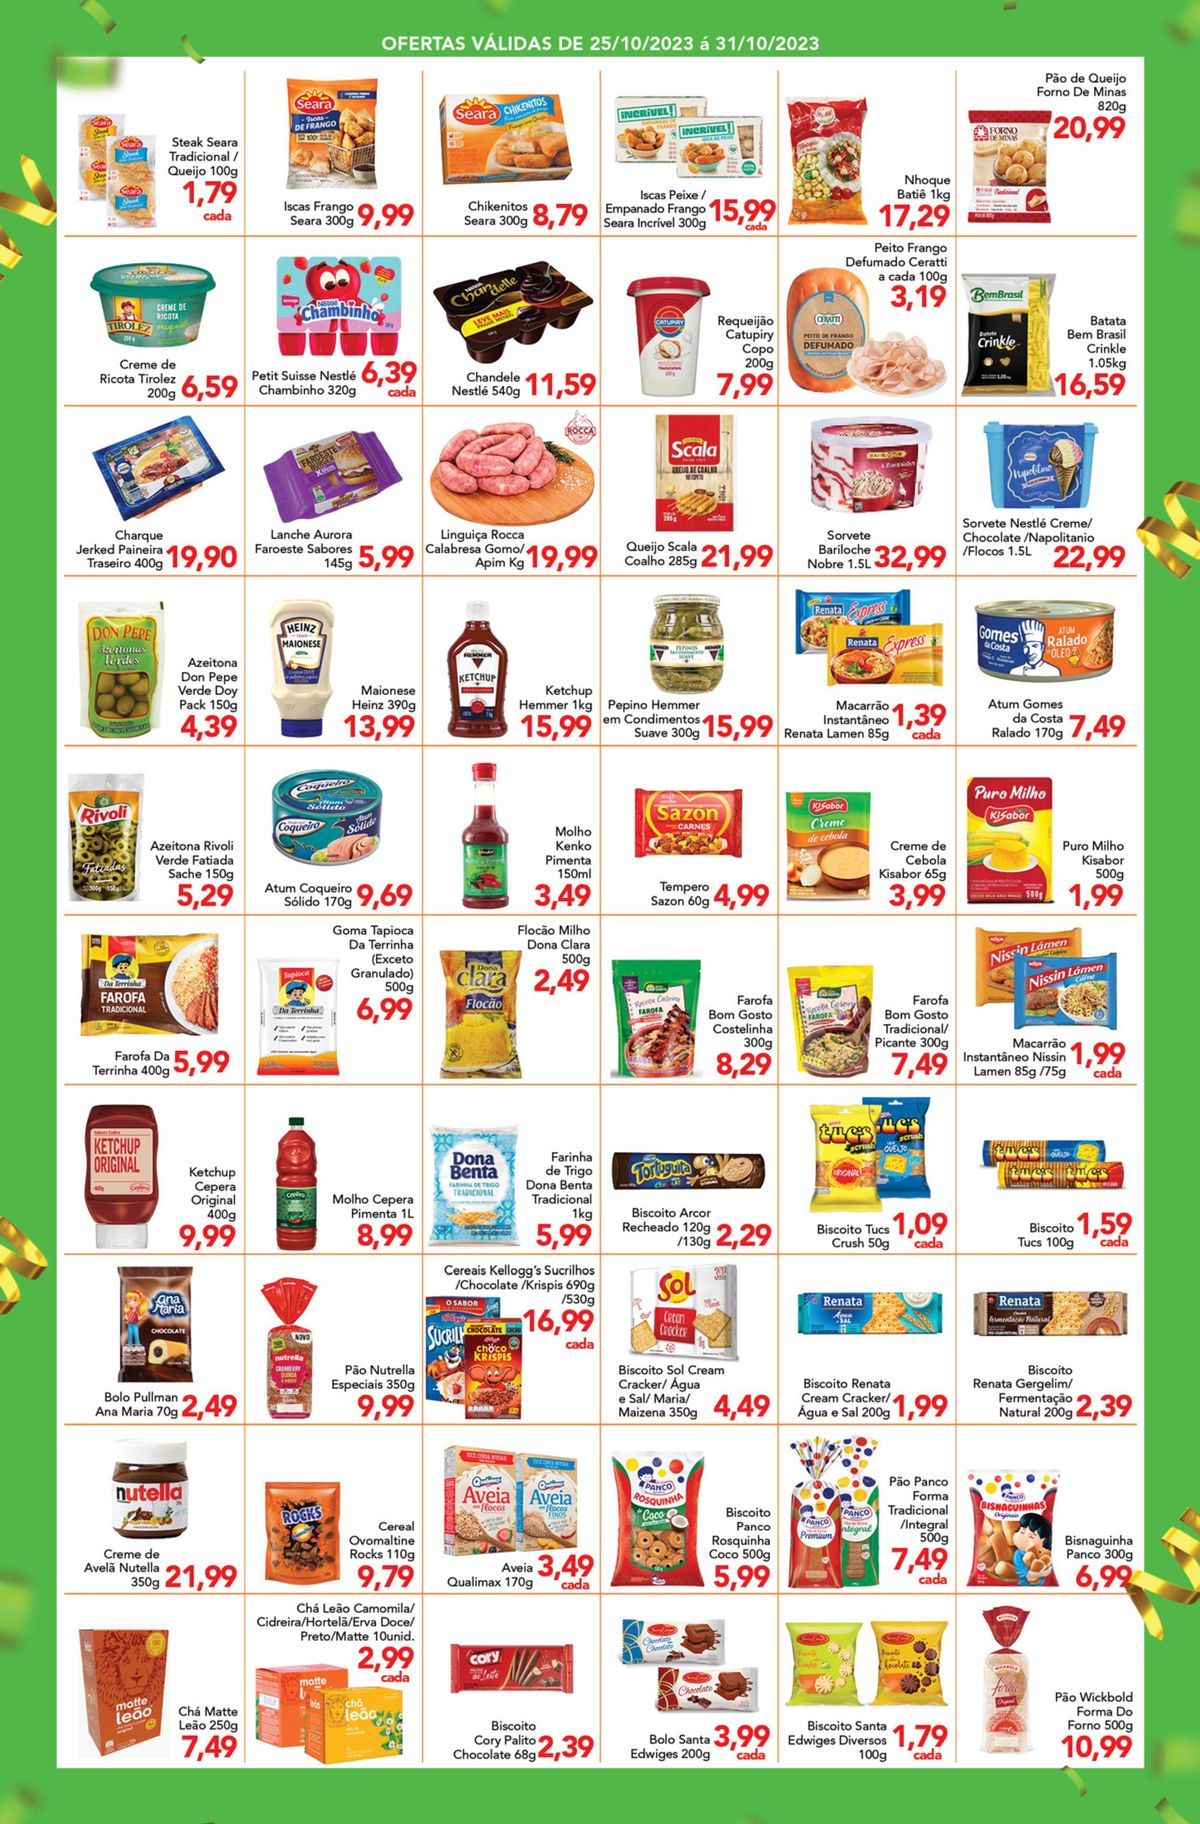 Ofertas em produtos de supermercado - destaque para Steak Seara, Creme de Ricota Tíolez e Petit Sui